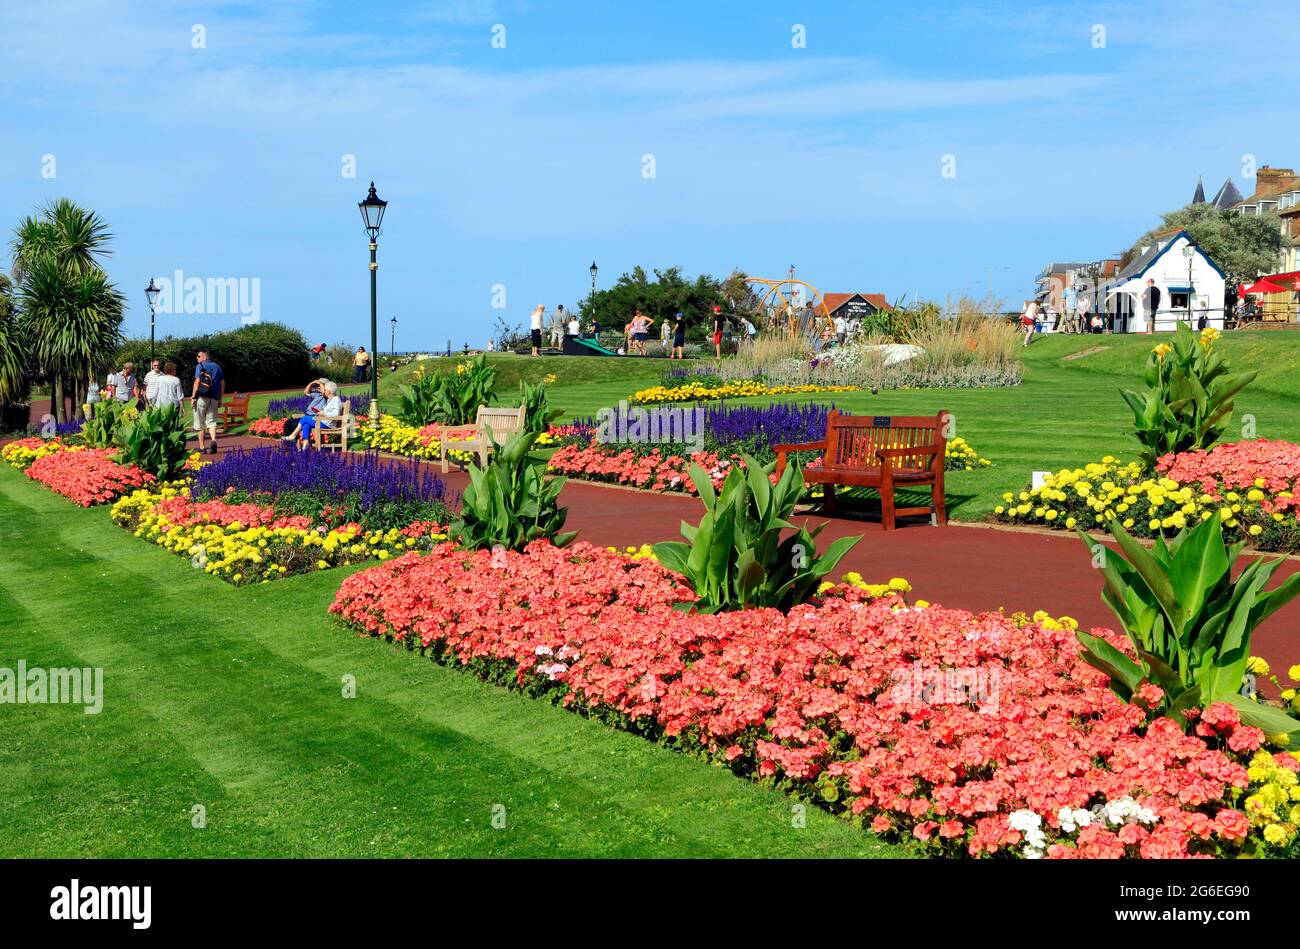 Esplanade Gardens, Cliff top, jardín municipal, Hunstanton, Norfolk, Inglaterra, Reino Unido, centro turístico costero Foto de stock